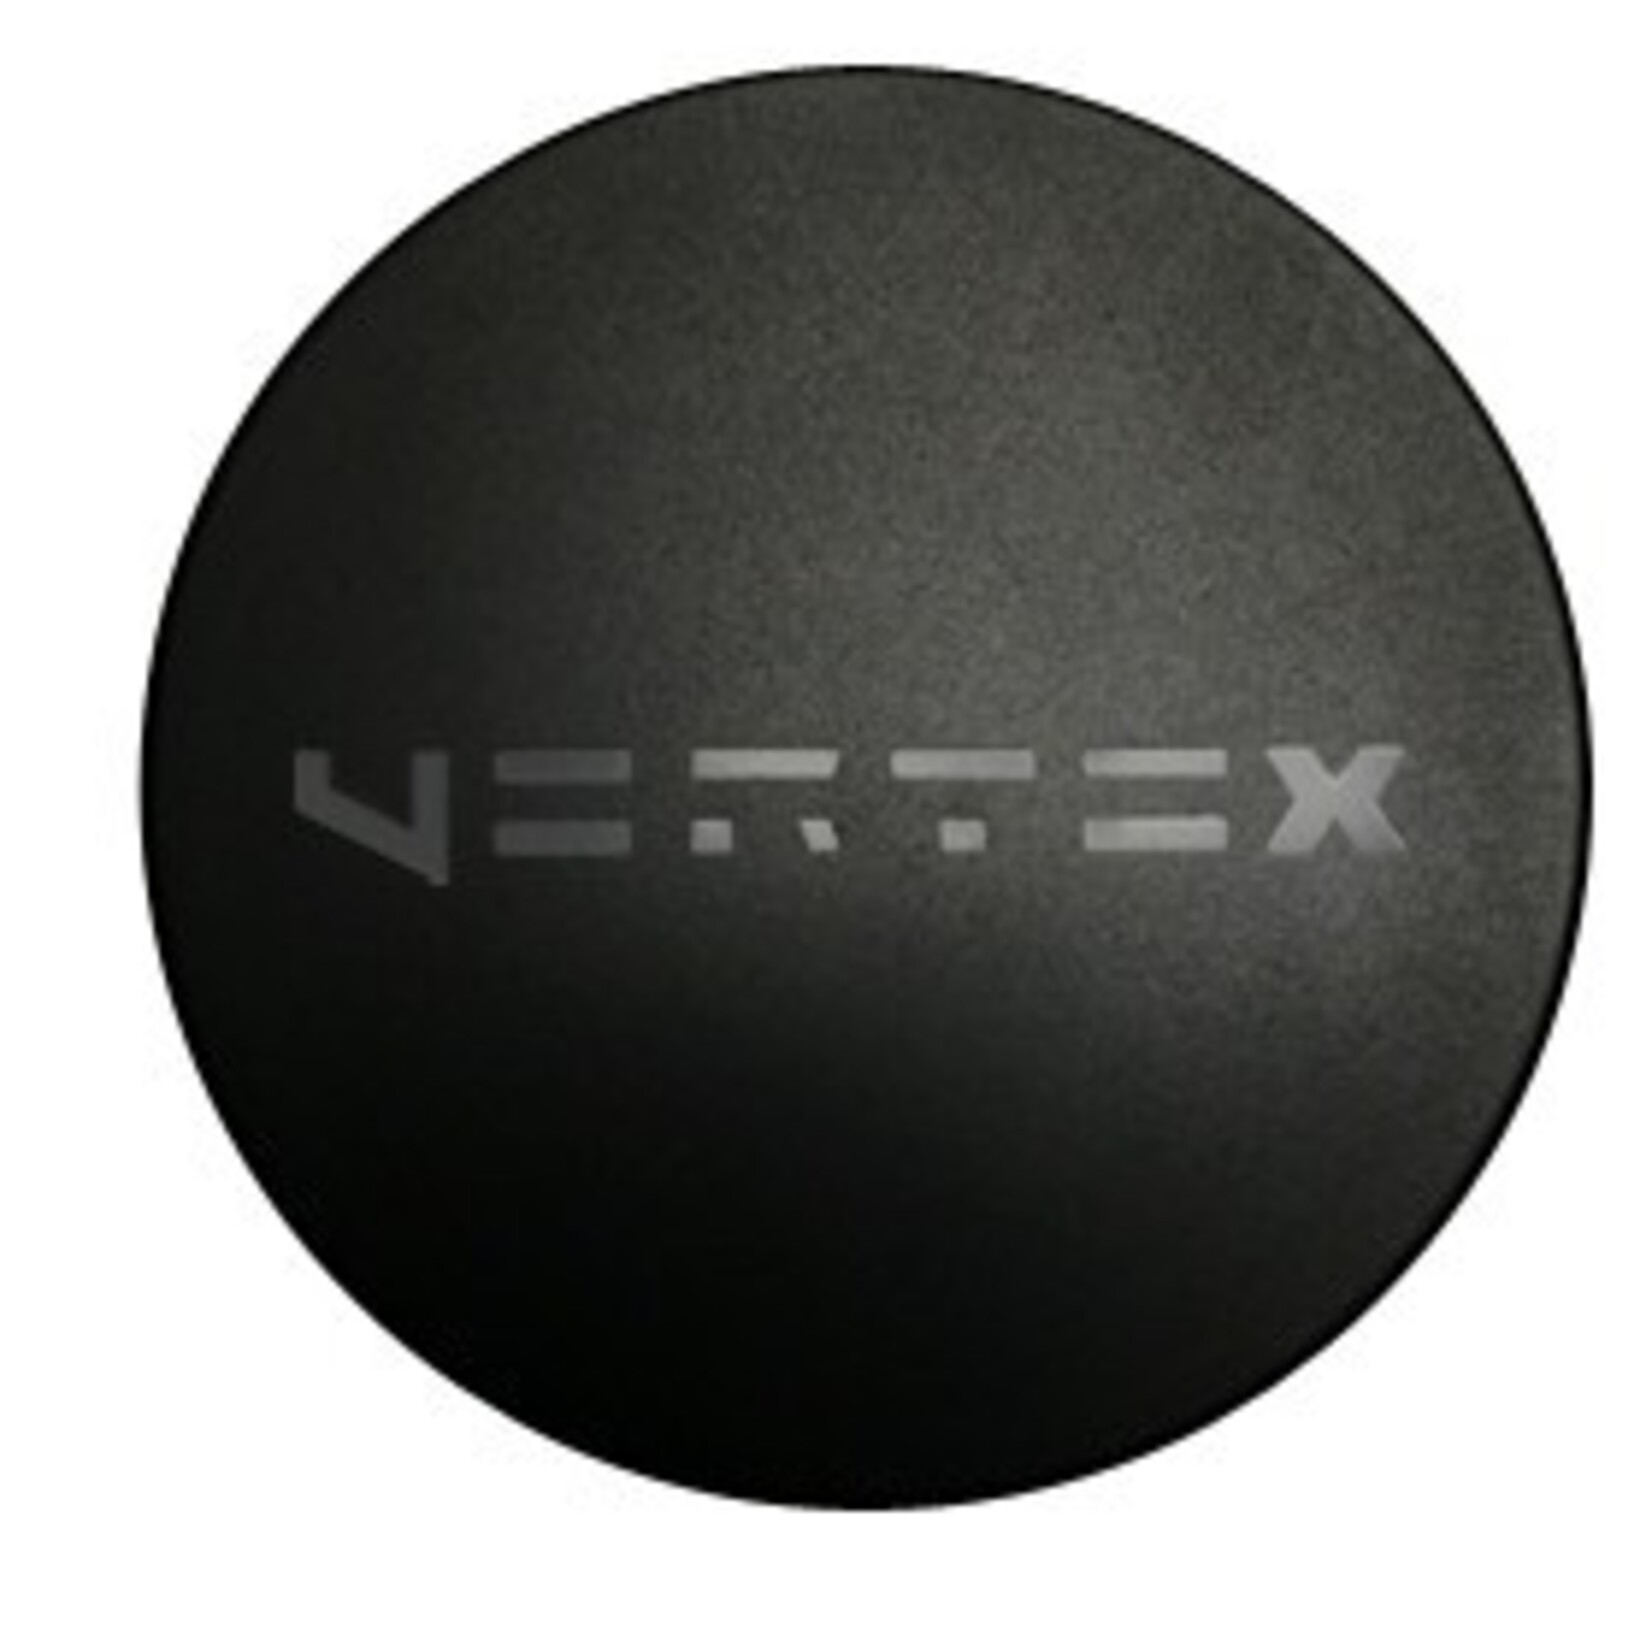 WAXADDICT VORTEX - メンテナンス用品